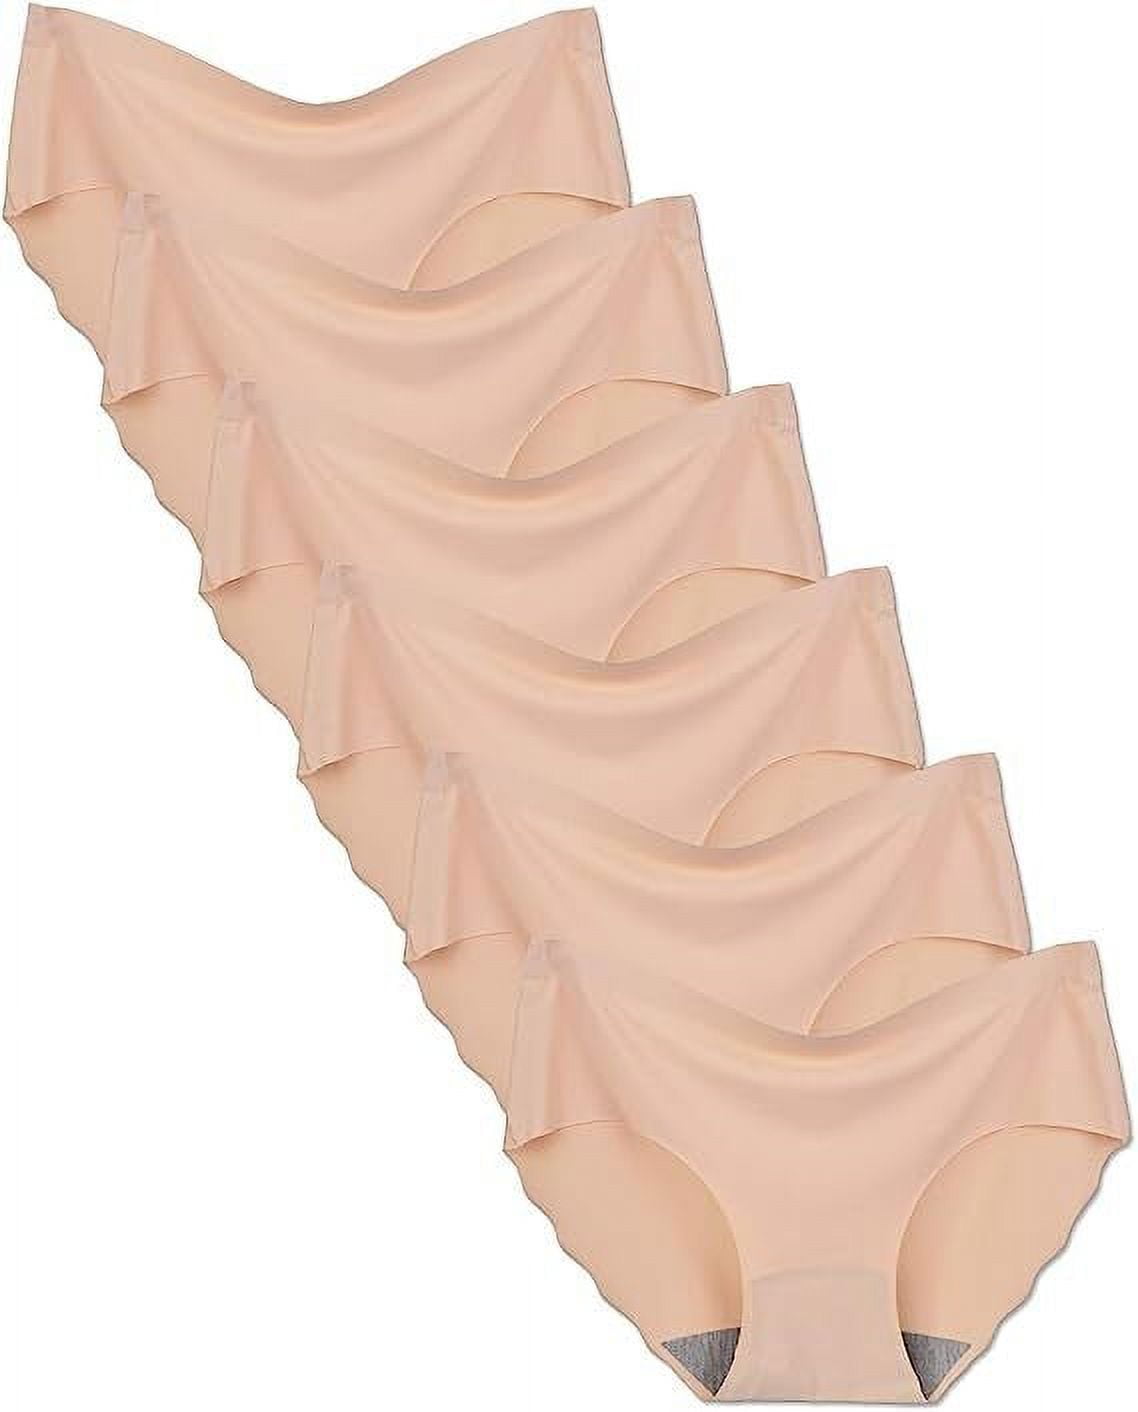 Joyspun Women's Seamless Hi Cut Panties, 6-Pack, Sizes XS to 3XL 